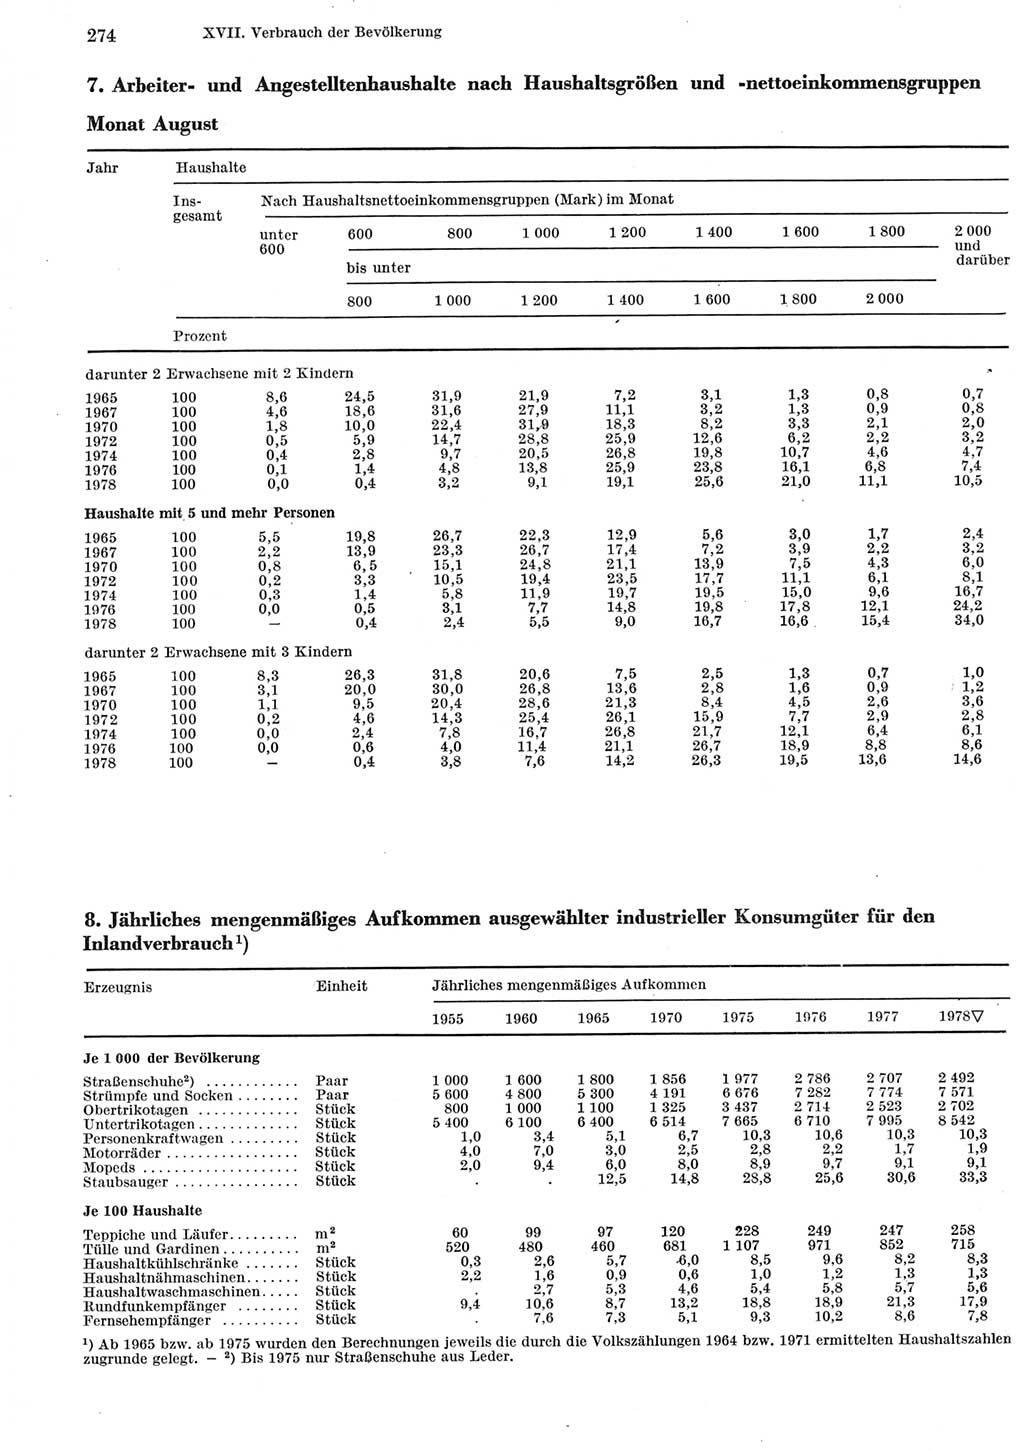 Statistisches Jahrbuch der Deutschen Demokratischen Republik (DDR) 1979, Seite 274 (Stat. Jb. DDR 1979, S. 274)